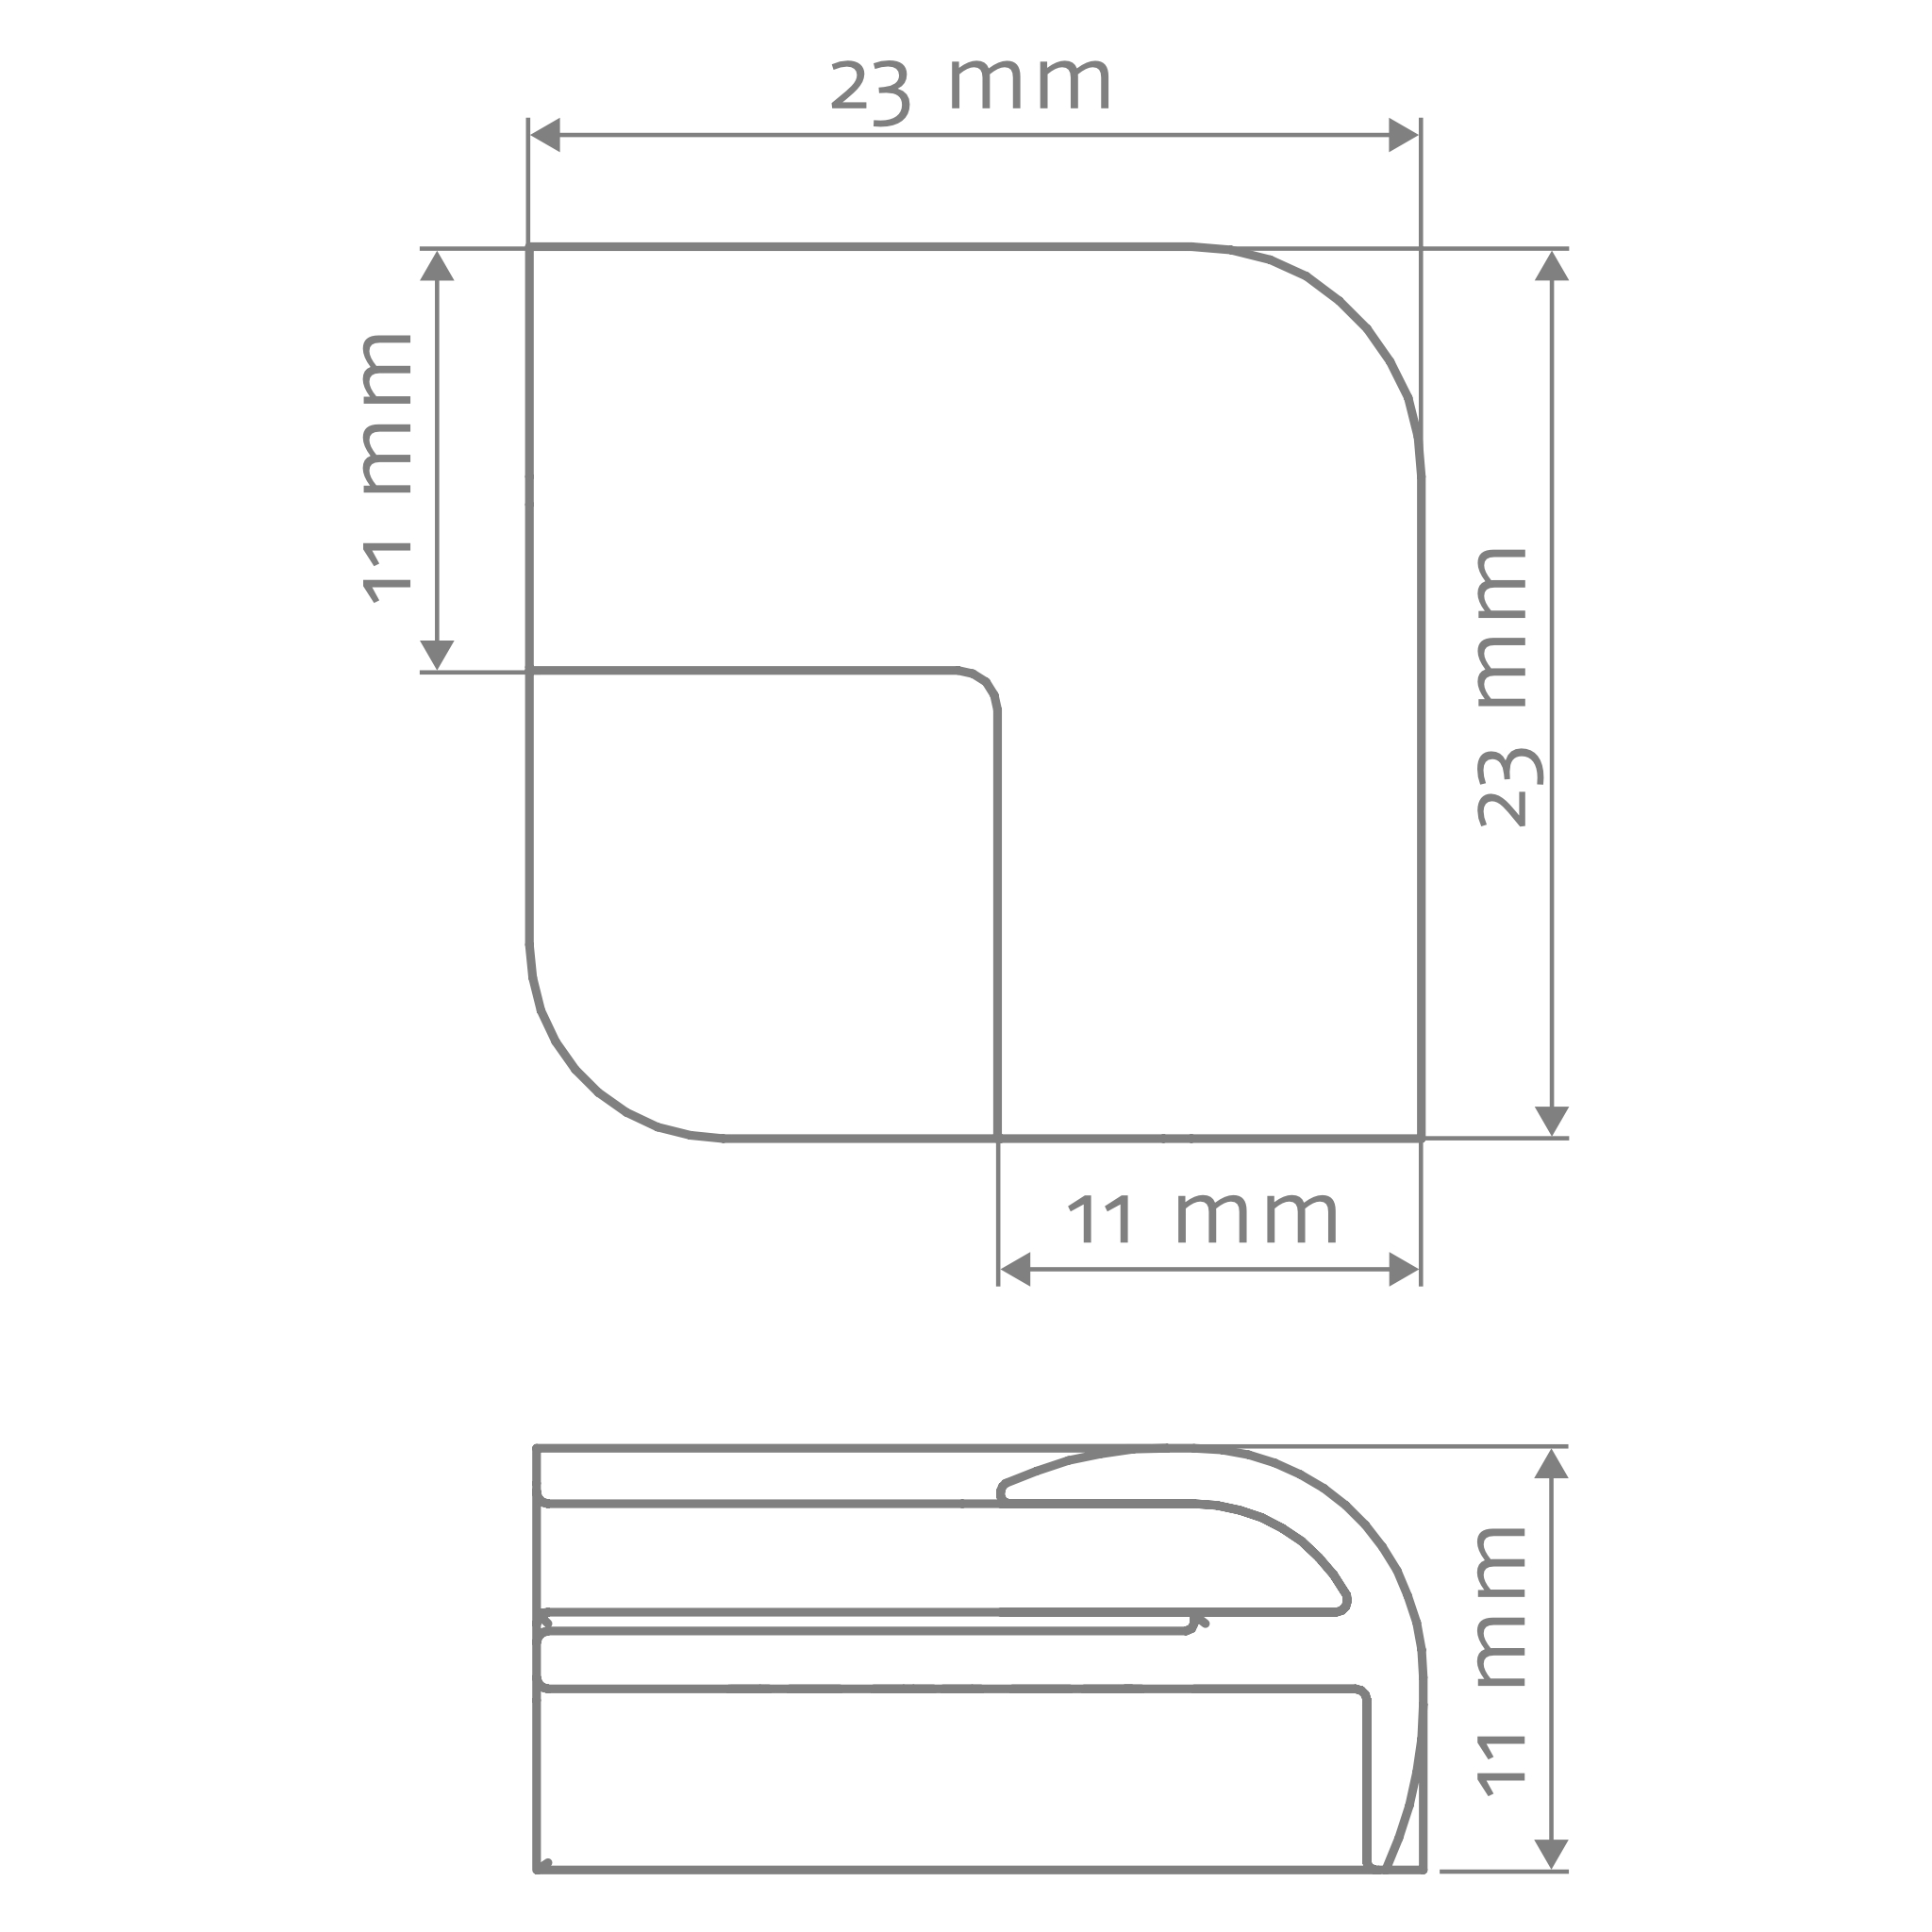 HSK 3D-Ecke außen, rund „RenoDeco“ für RenoDeco Wandverkleidungssystem in Alu Silber-matt